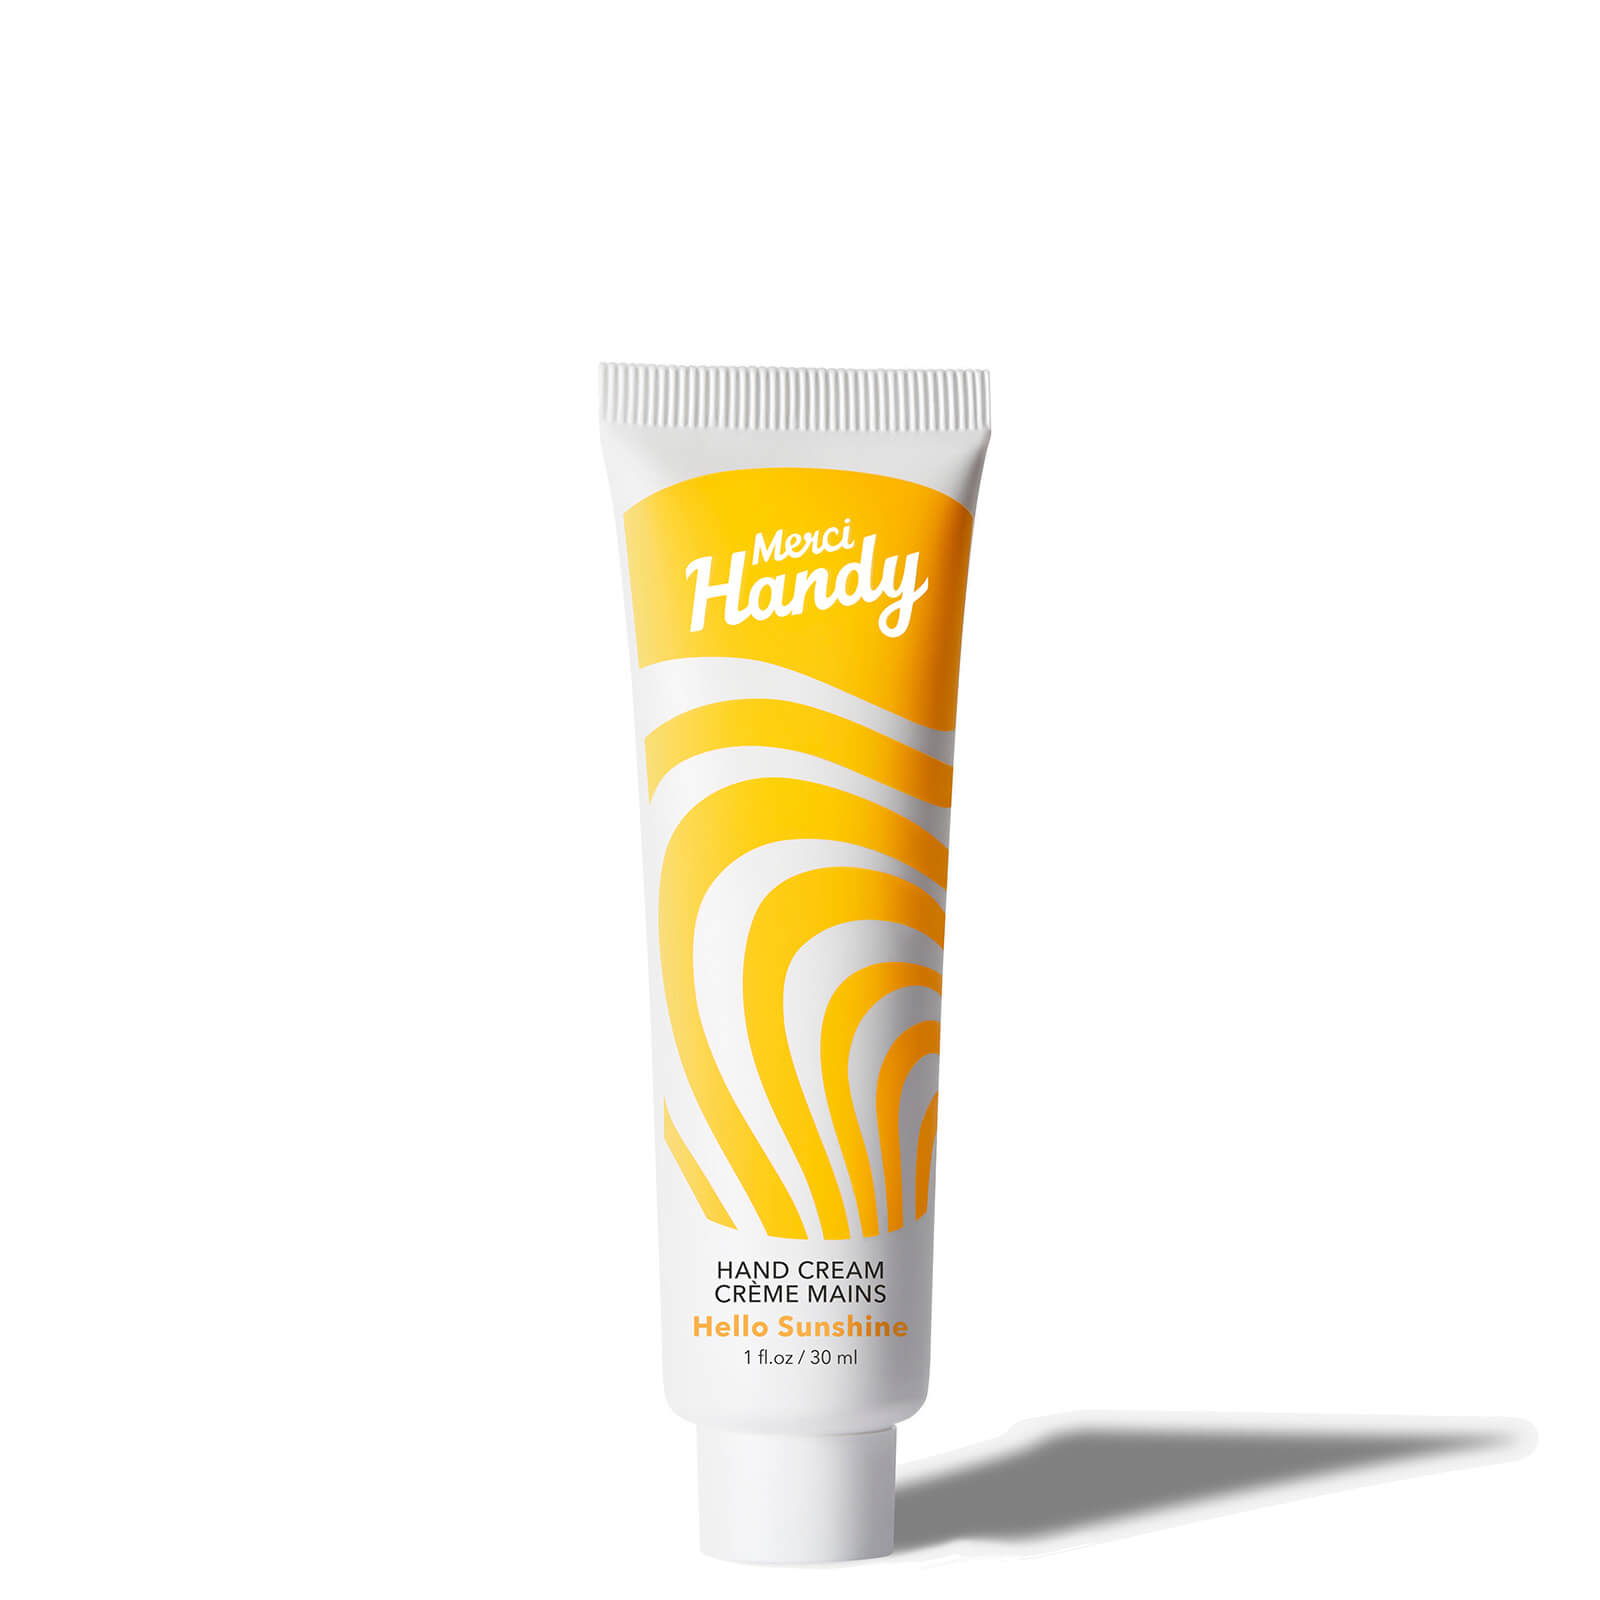 Merci Handy Hand Cream 30ml (Various Fragrance) - Hello Sunshine von Merci Handy